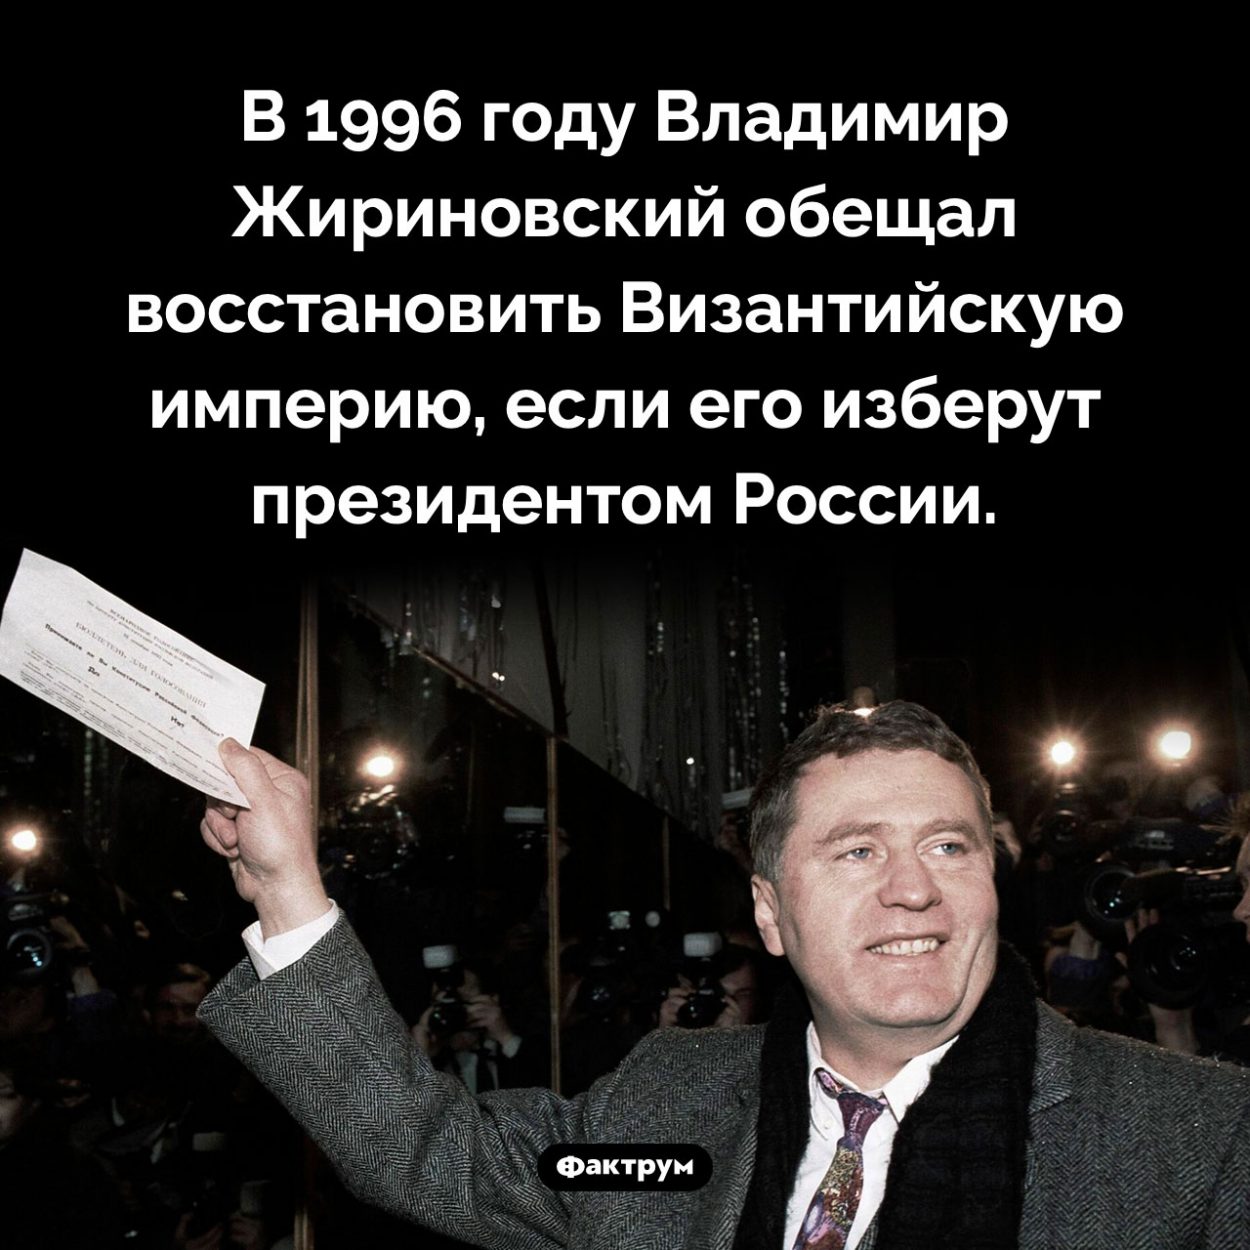 Предвыборные обещания Жириновского. В 1996 году Владимир Жириновский обещал восстановить Византийскую империю, если его изберут президентом России.